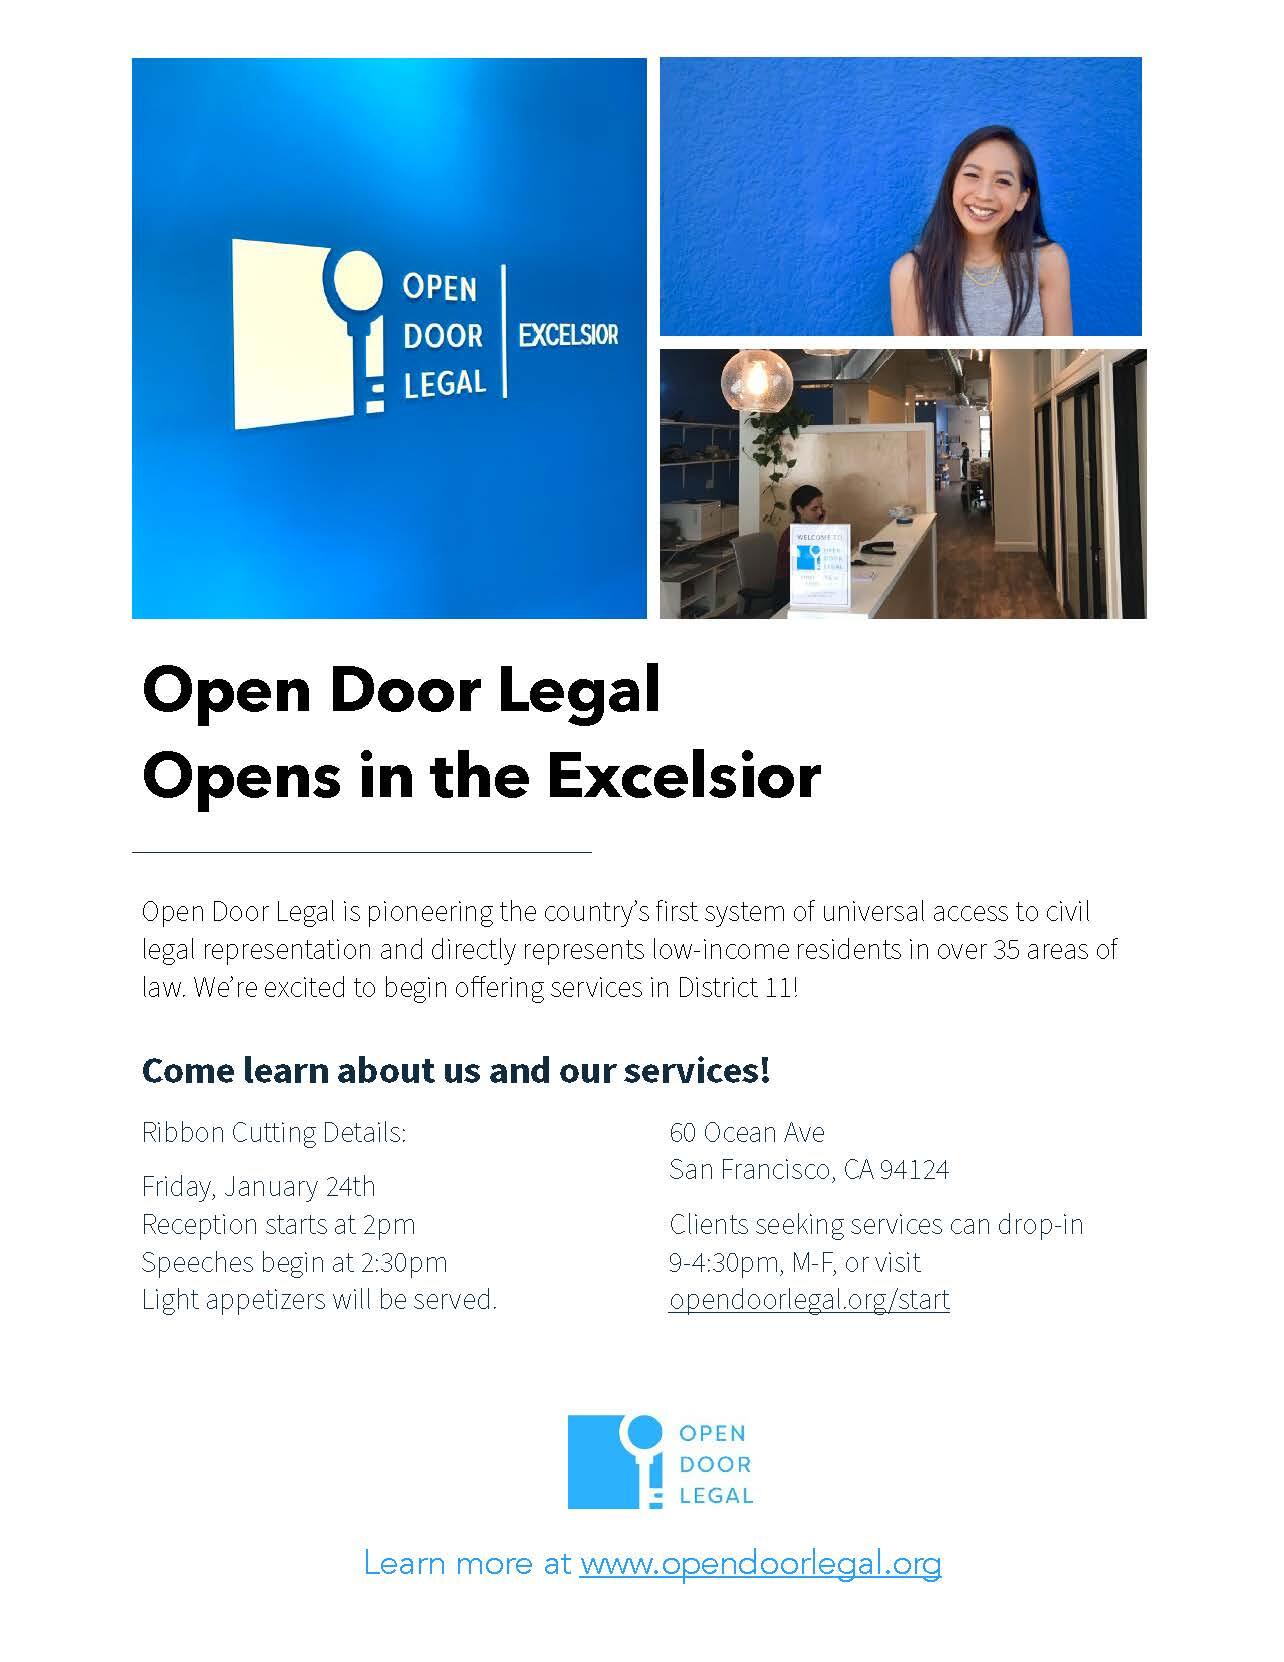 Open Door Legal - Universal Access